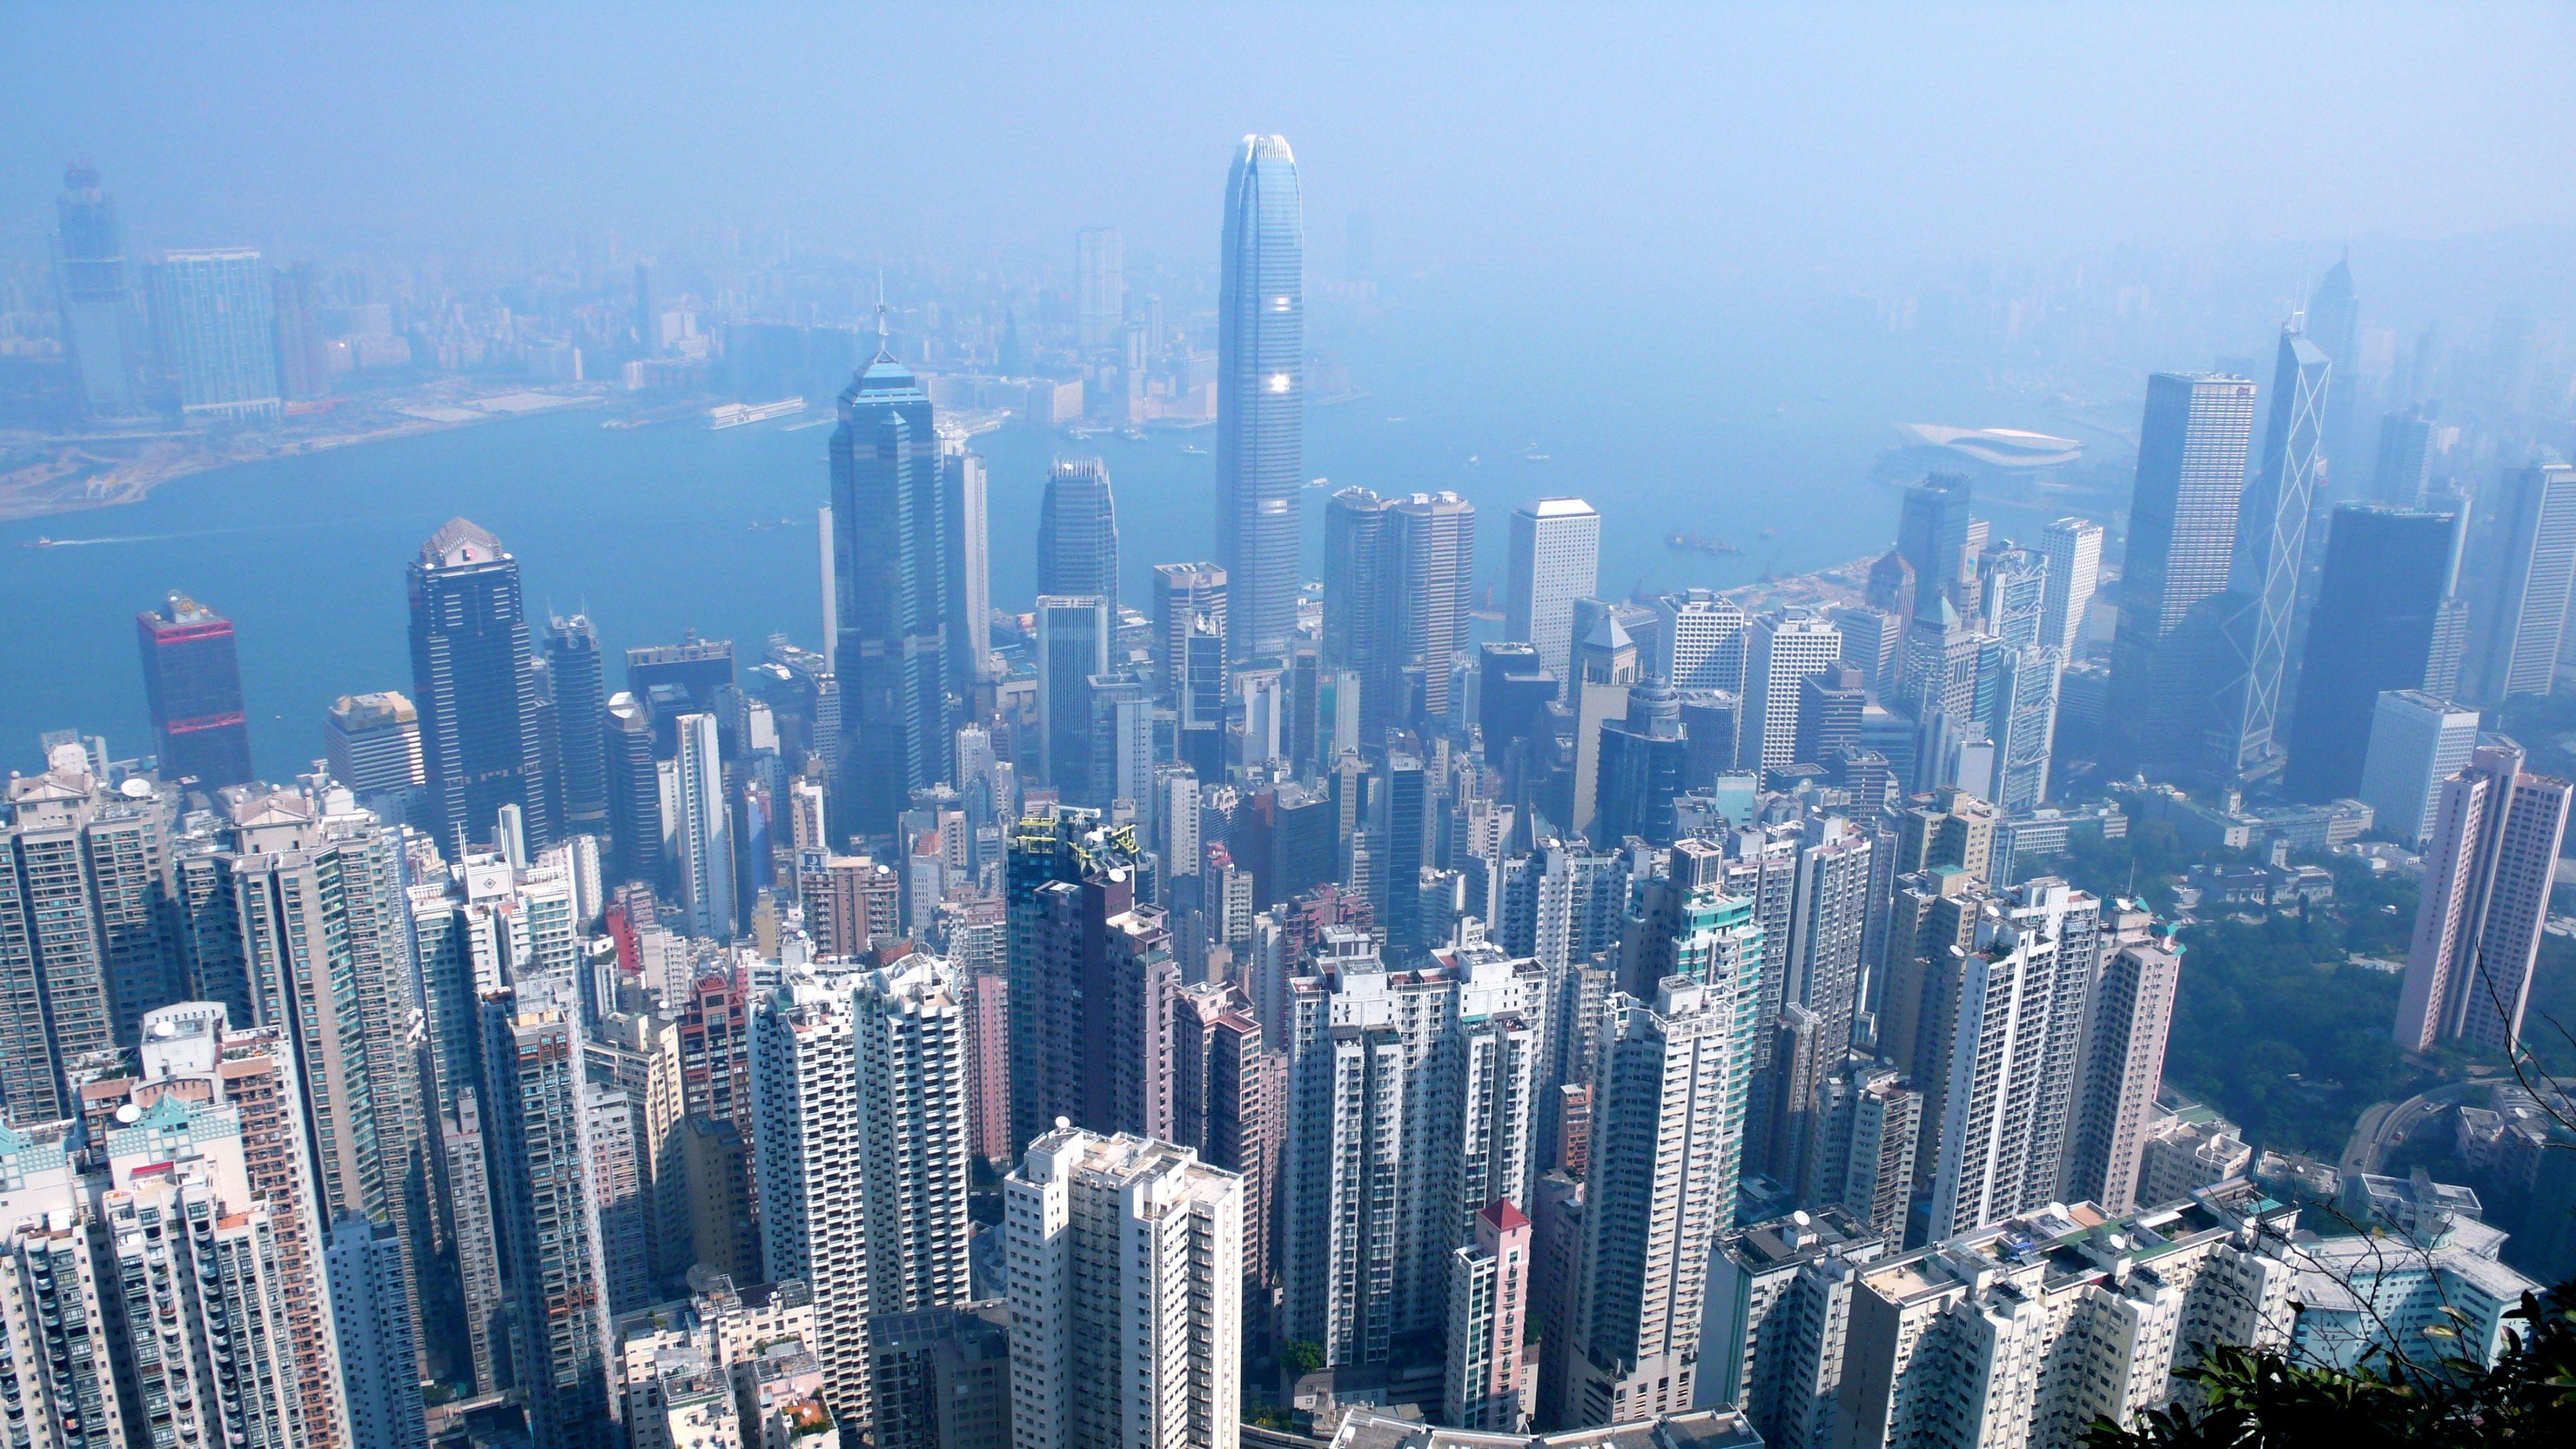 Companies hong kong. Китай Гонконг. Китай город Гонконг. Гонк-Конг красивый вид города здания.